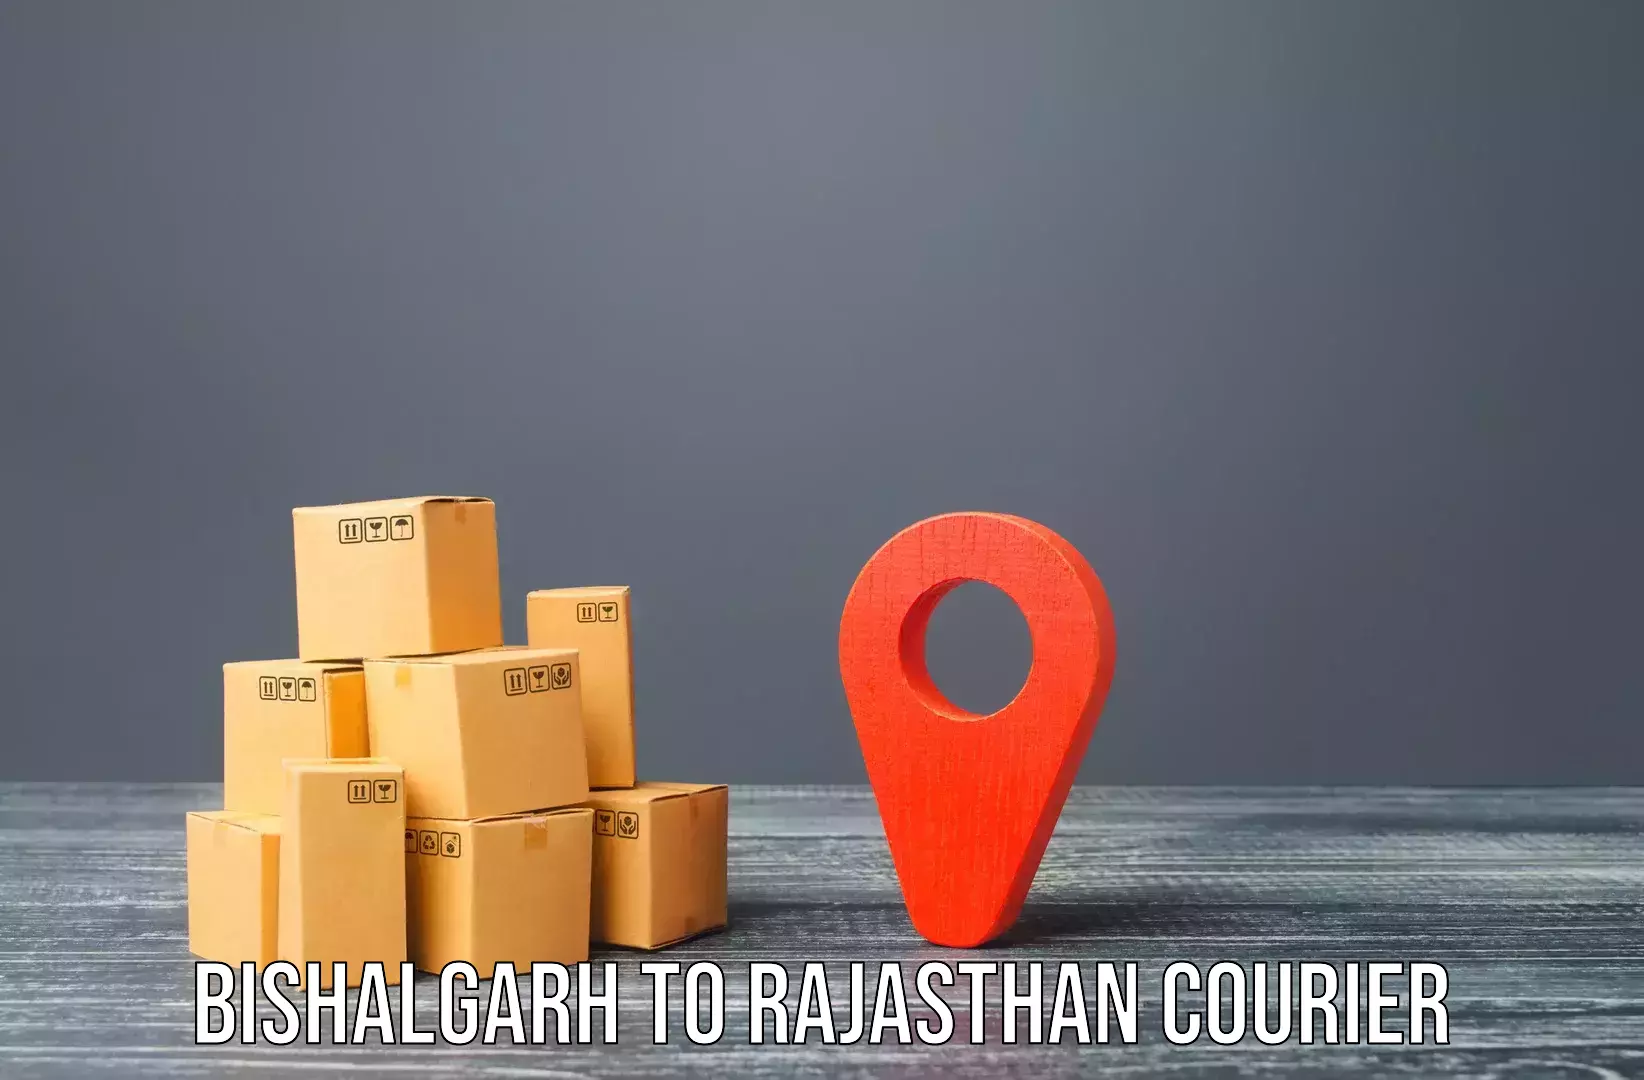 Door-to-door relocation services Bishalgarh to Jaisalmer